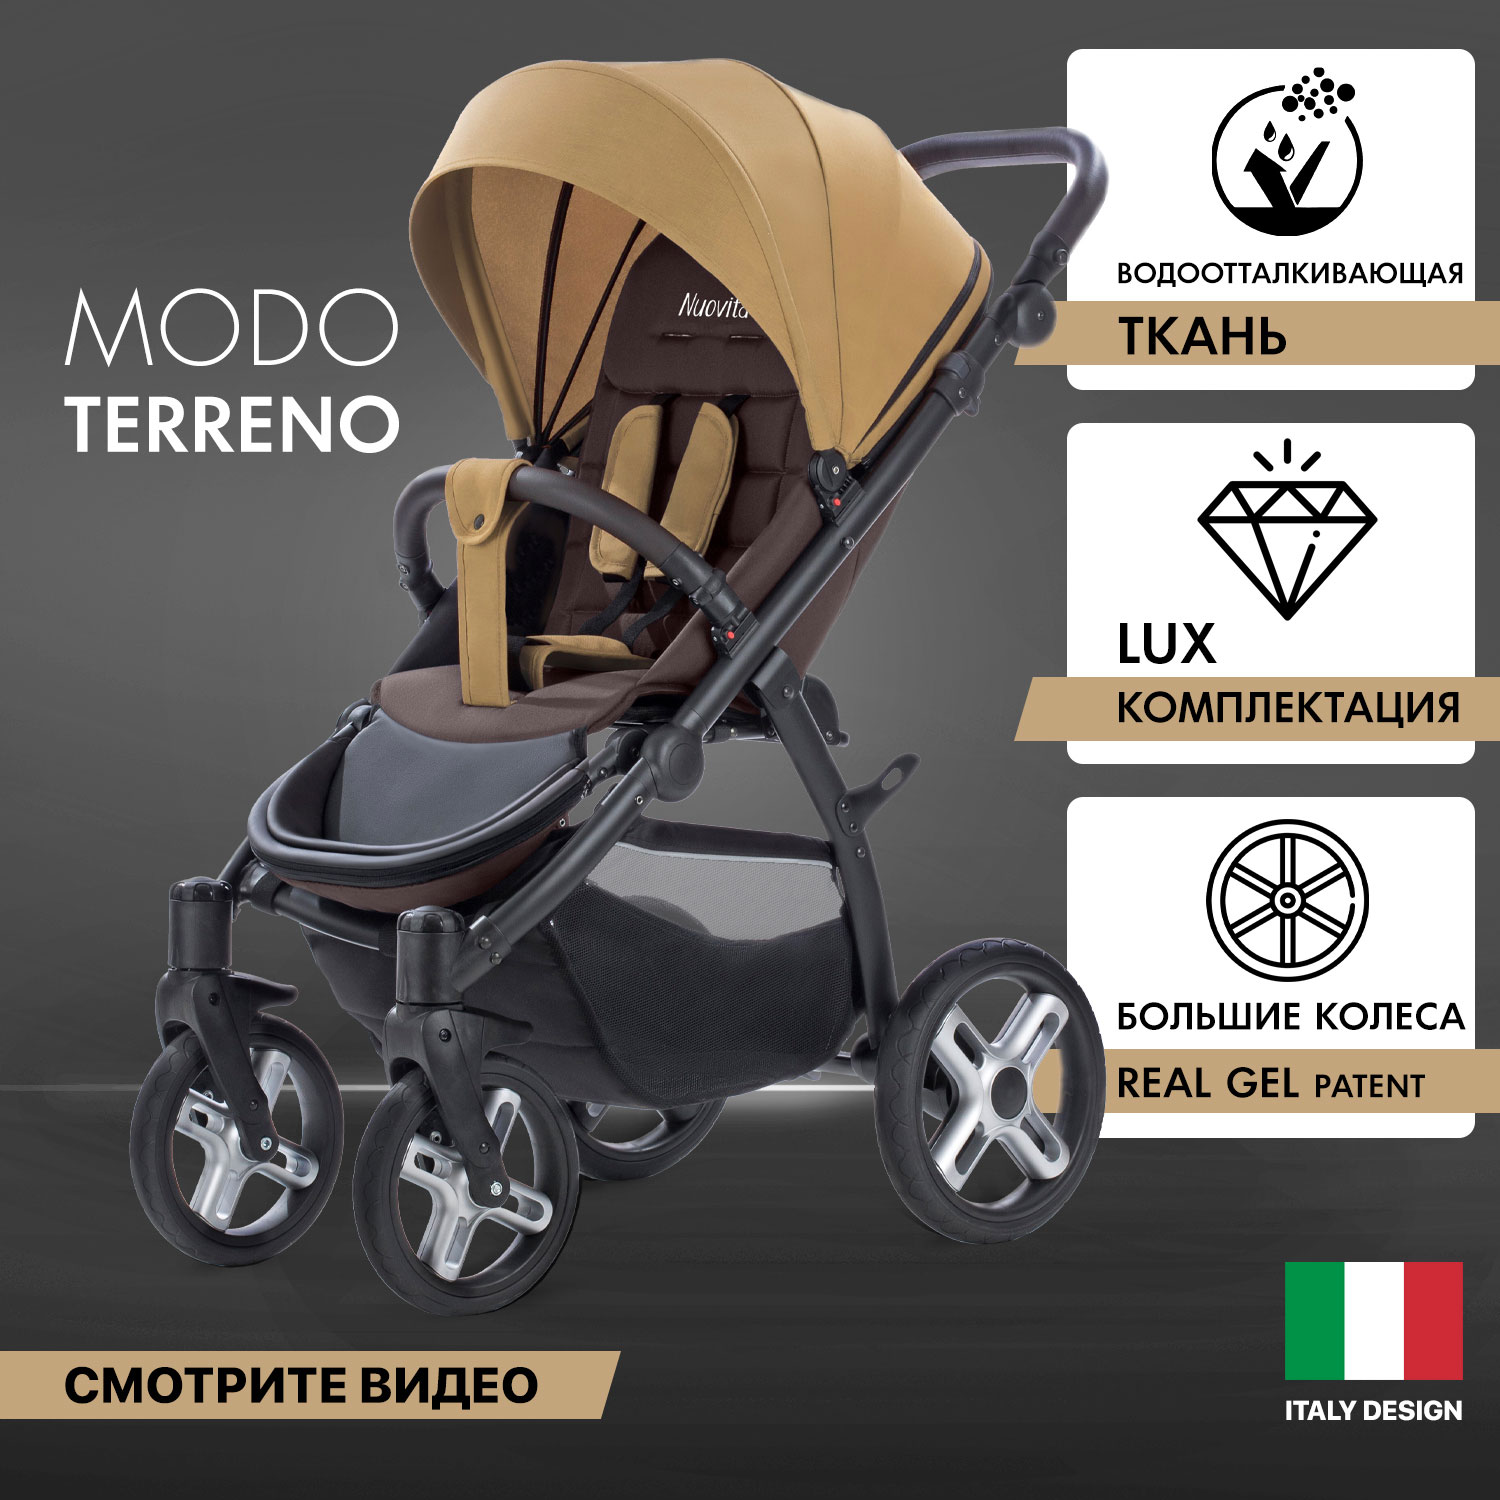 Прогулочная коляска Nuovita Modo Terreno Beige Marrone/Бежево-коричневый